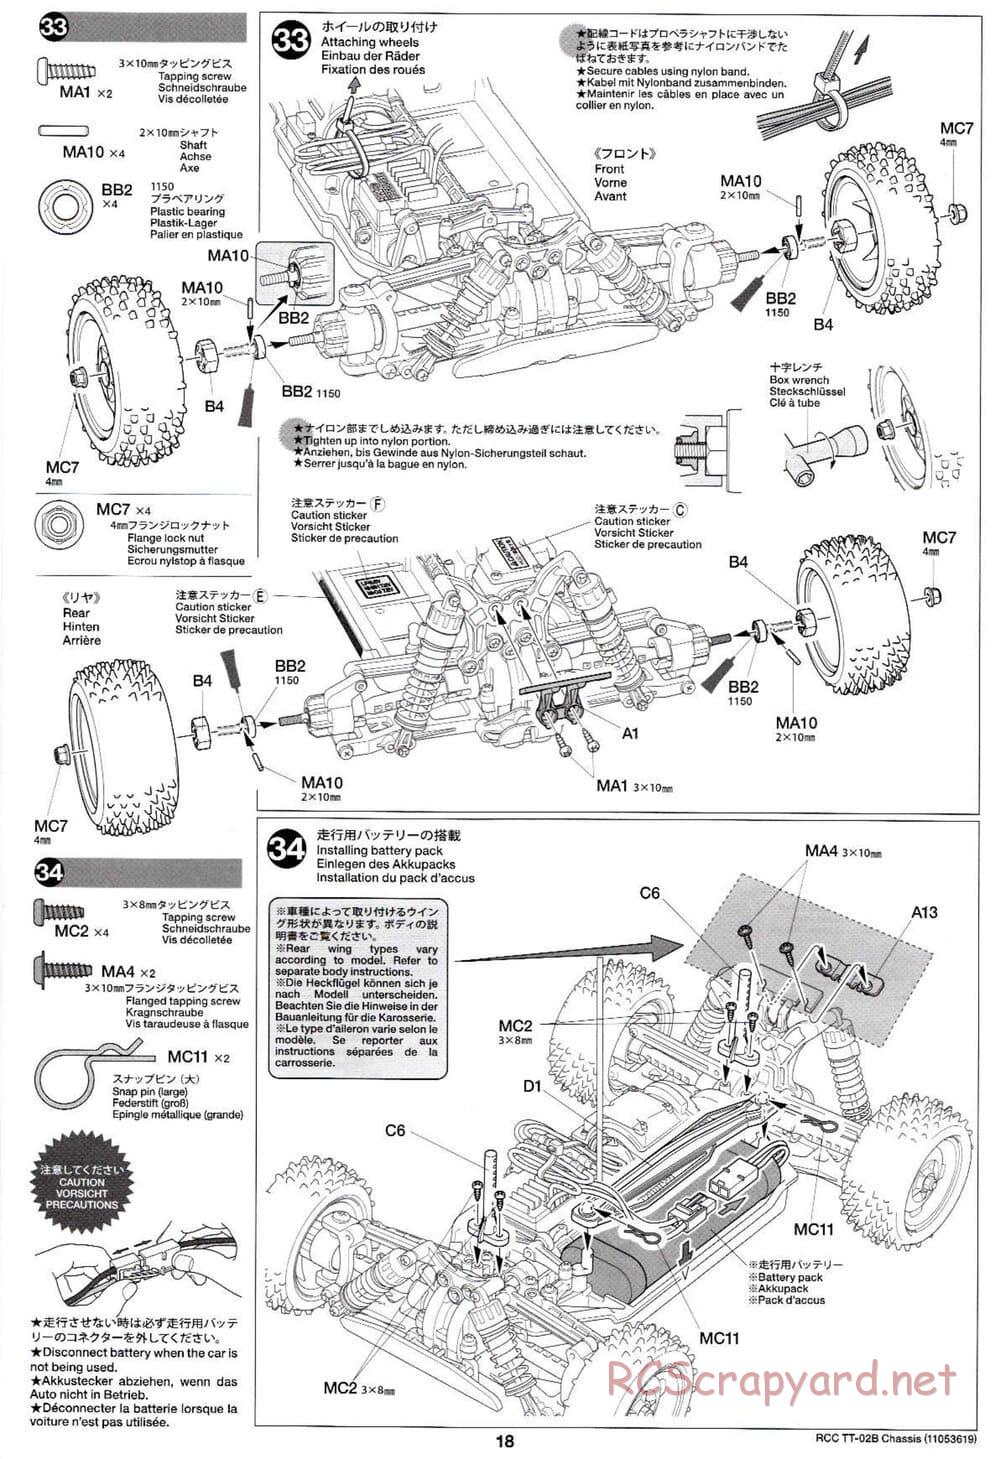 Tamiya - TT-02B Chassis - Manual - Page 22